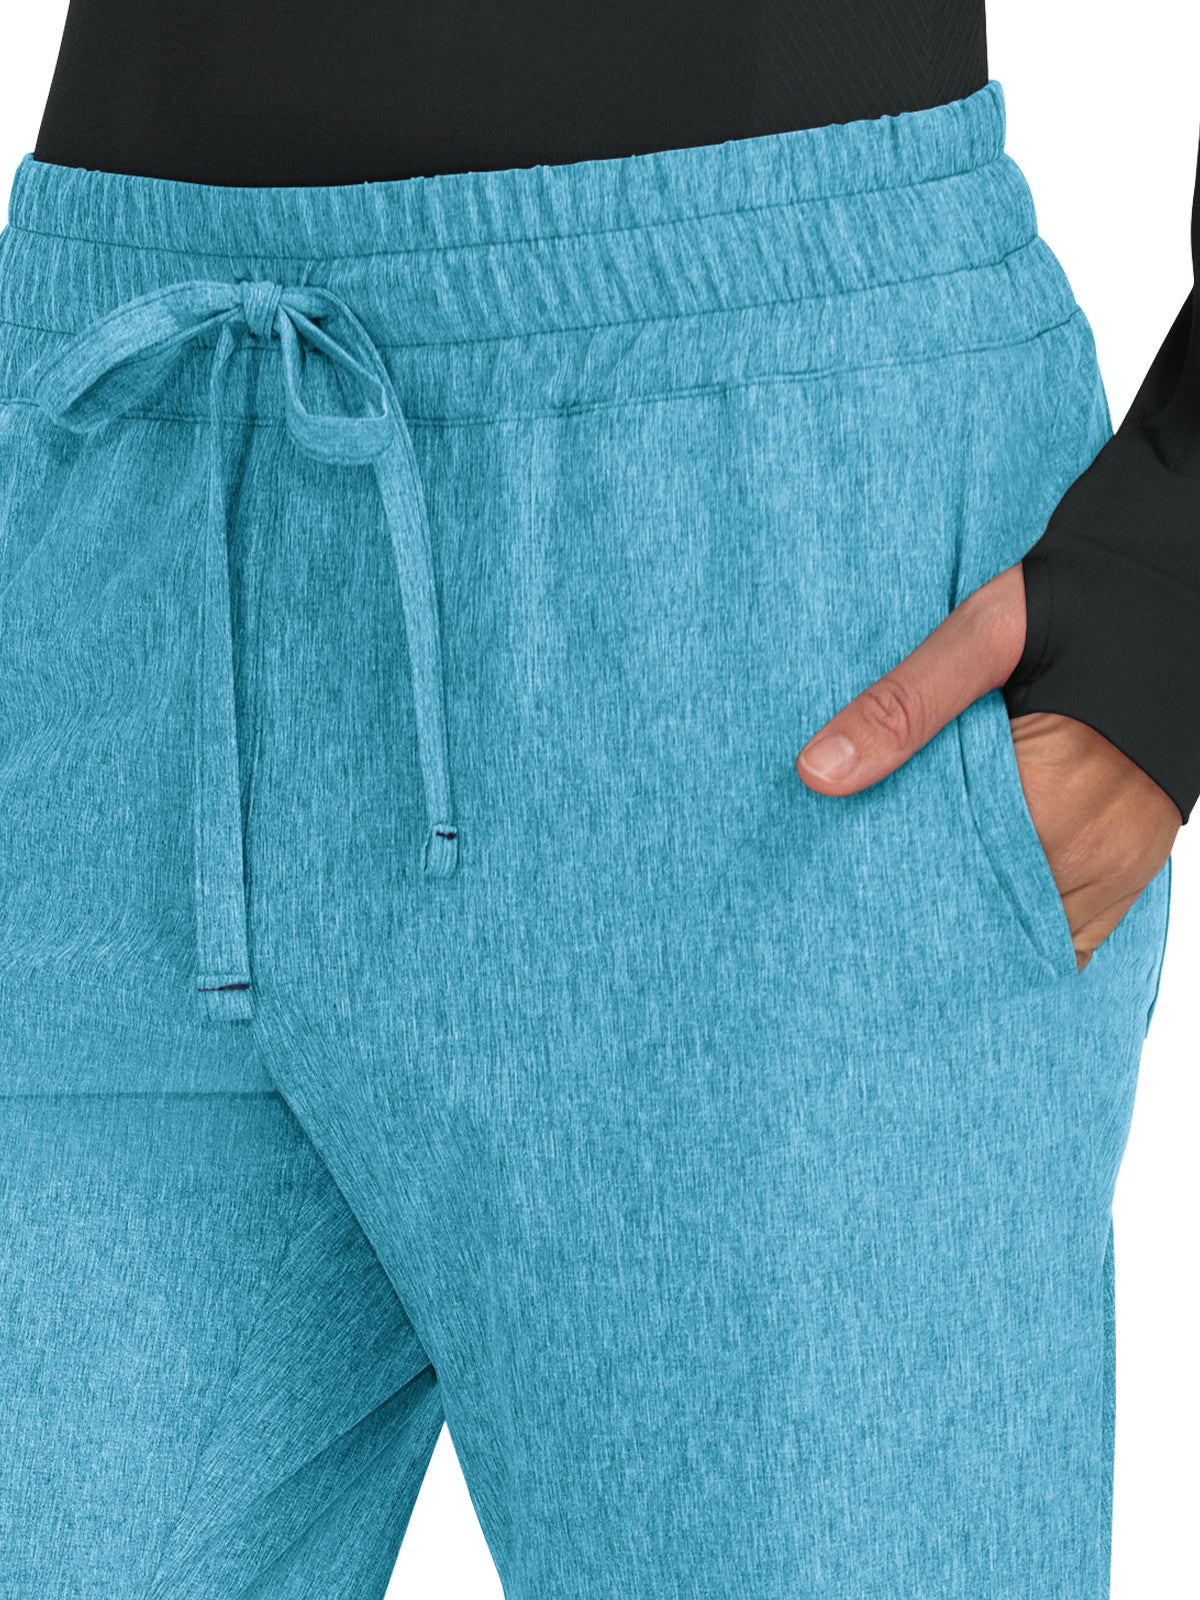 Women's 5-Pocket Stretch Jogger Scrub Pant